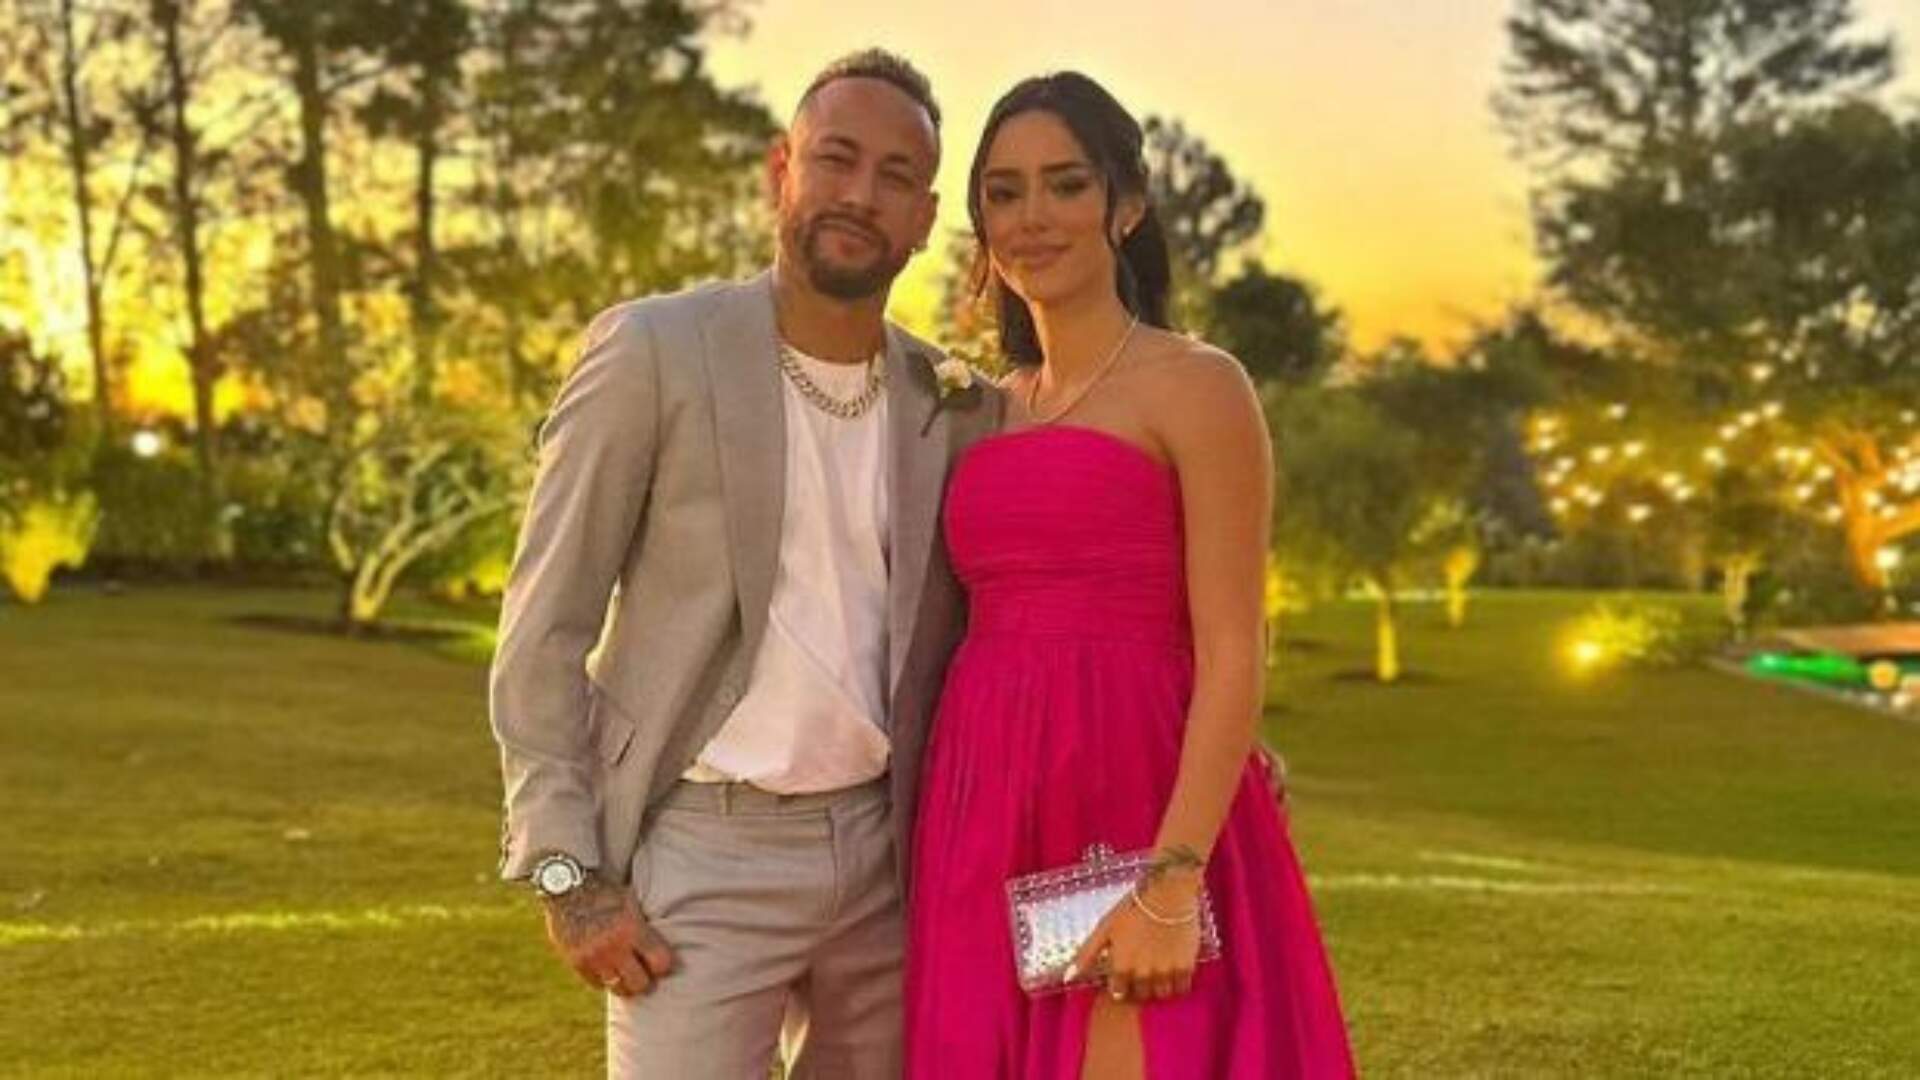 Mavie chegou ao mundo! Bruna Biancardi dá à luz a sua primeira filha com Neymar Jr. - Metropolitana FM